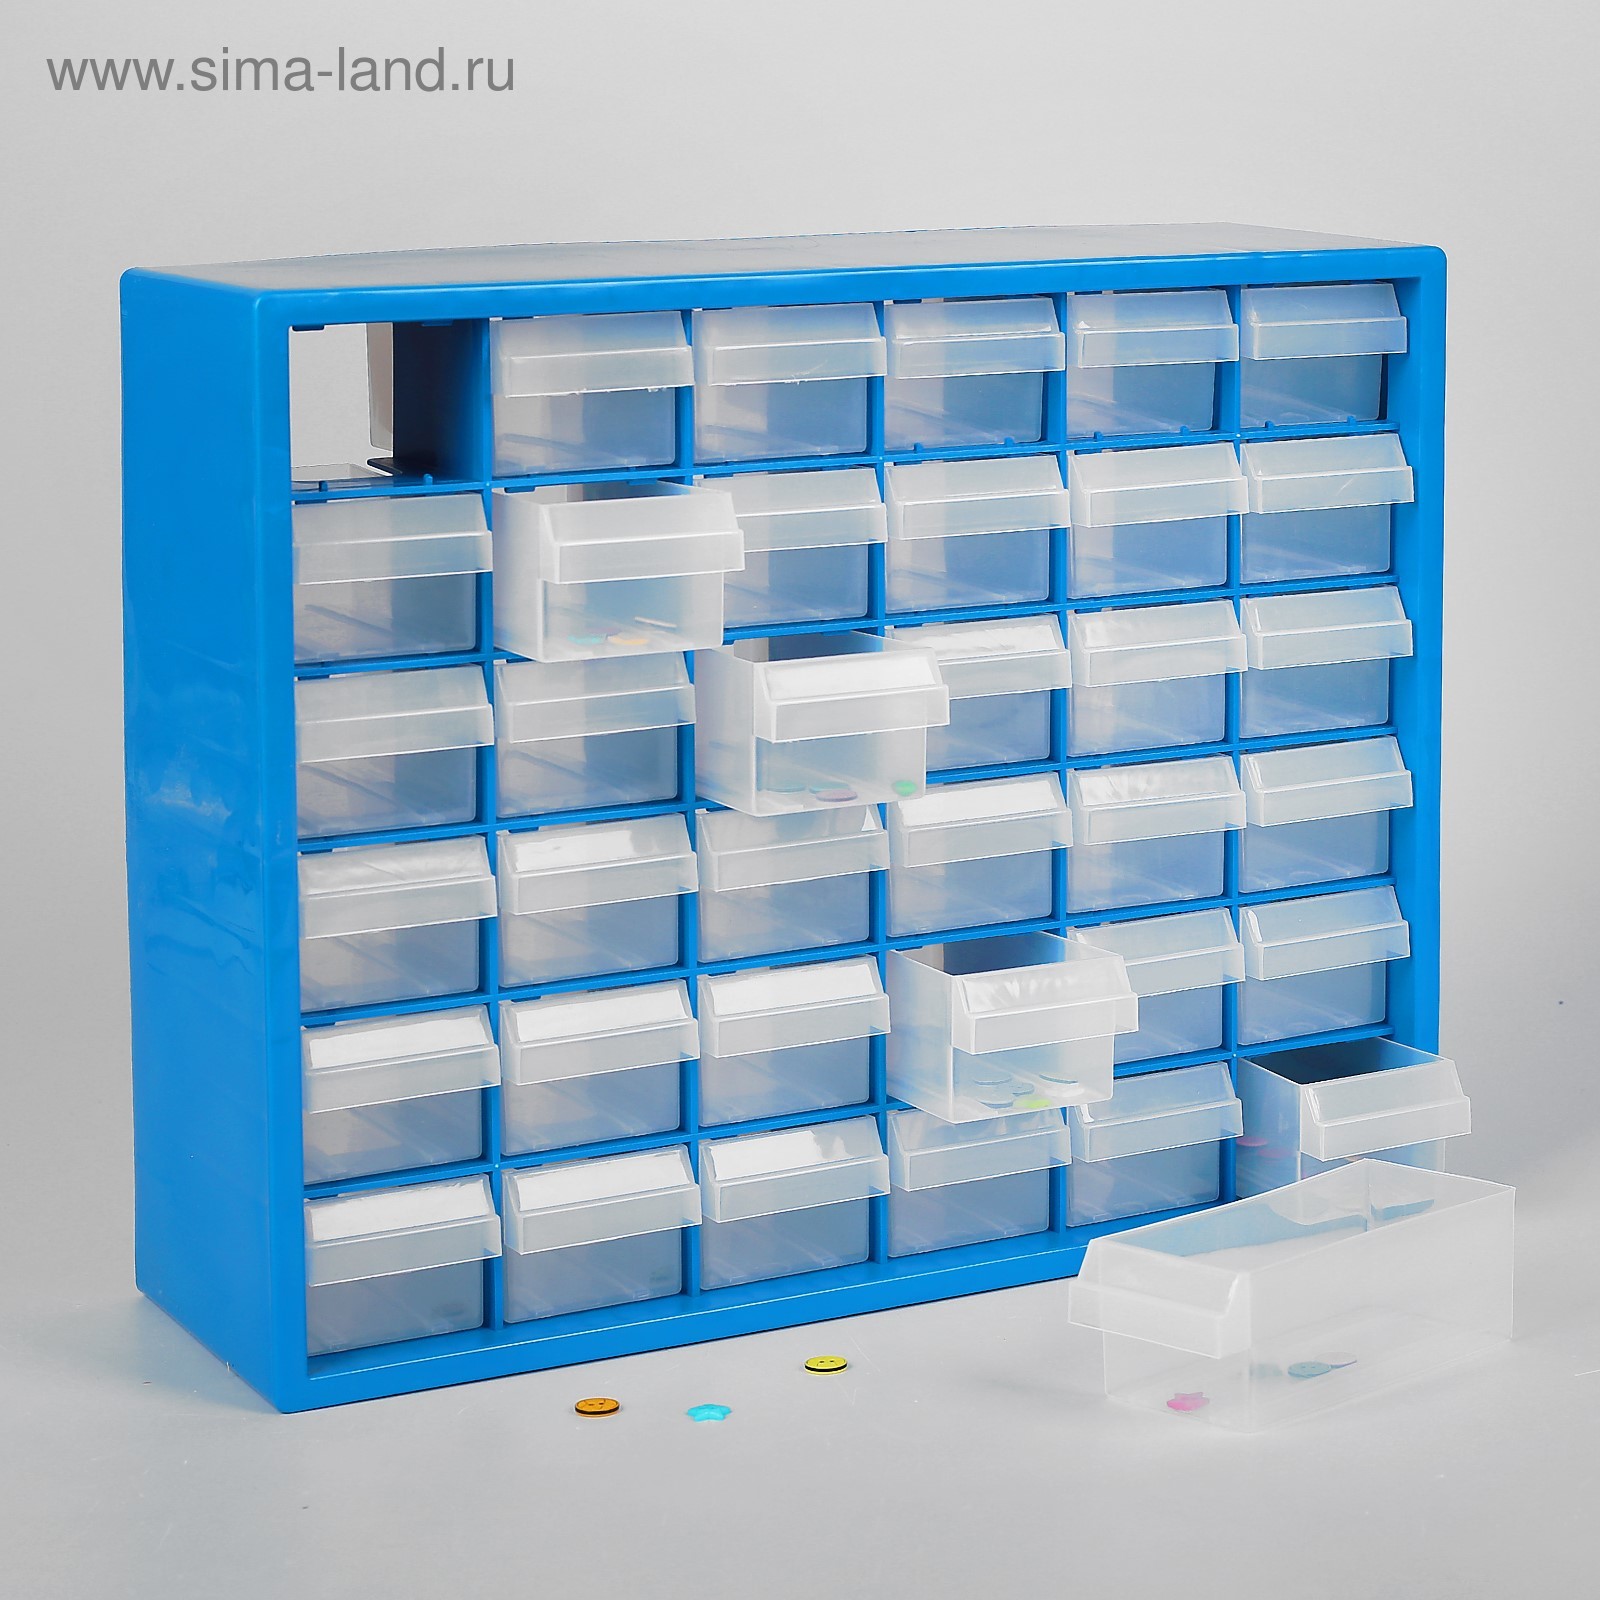 пластиковый стеллаж с ящиками выдвижными